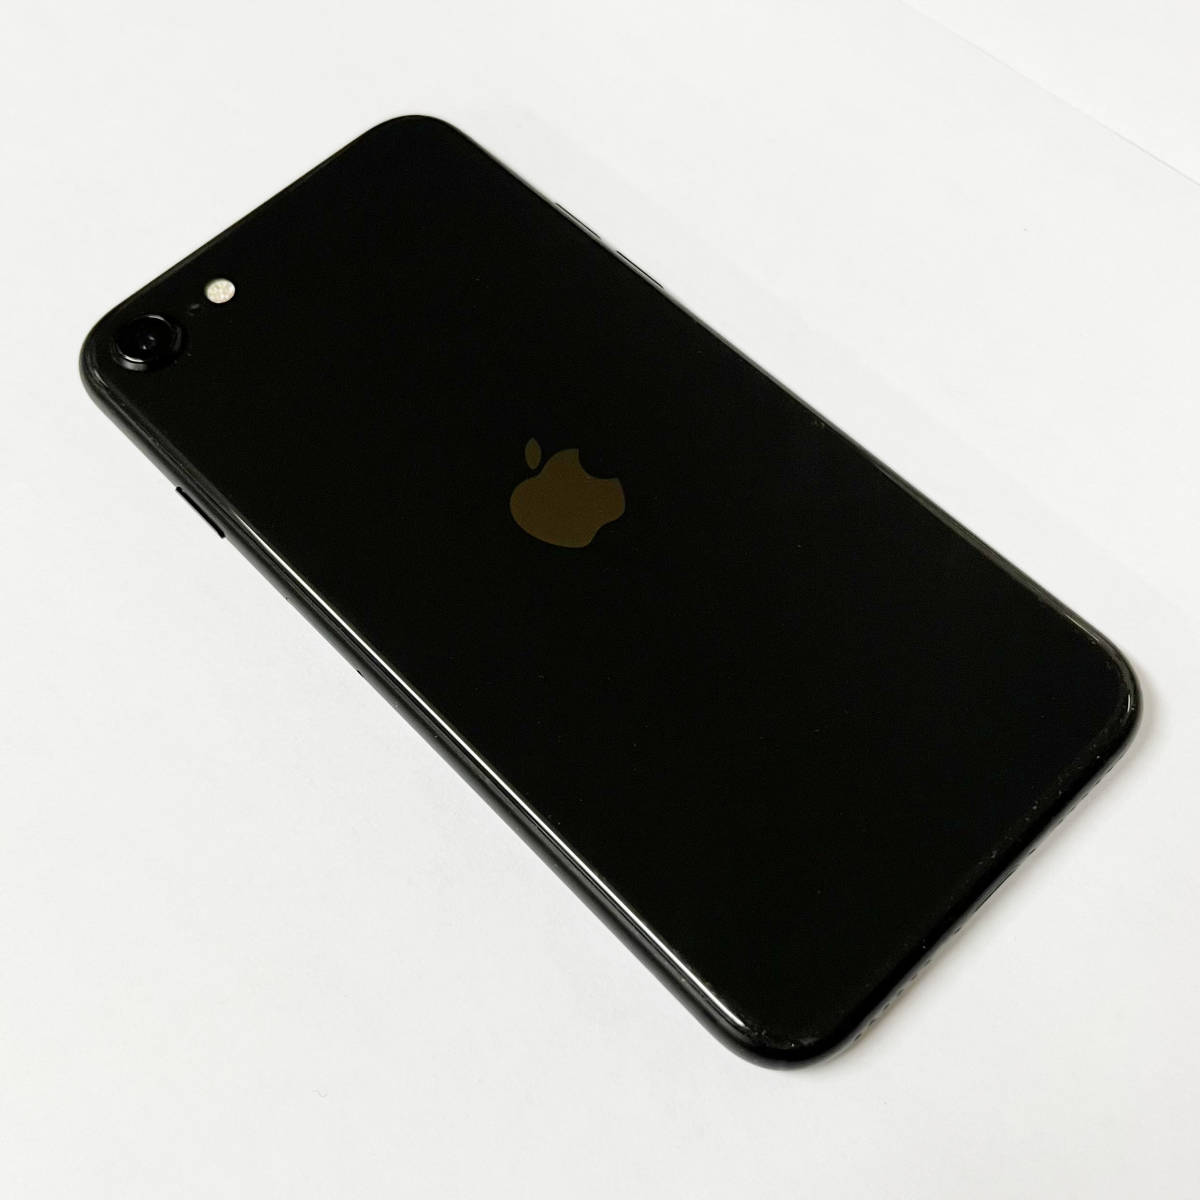 美品 SIMフリー iPhoneSE 黒 第2世代 64GB 国内版 シムフリー SE2 アイフォン スマートフォン iPhone SE スマホ ブラック